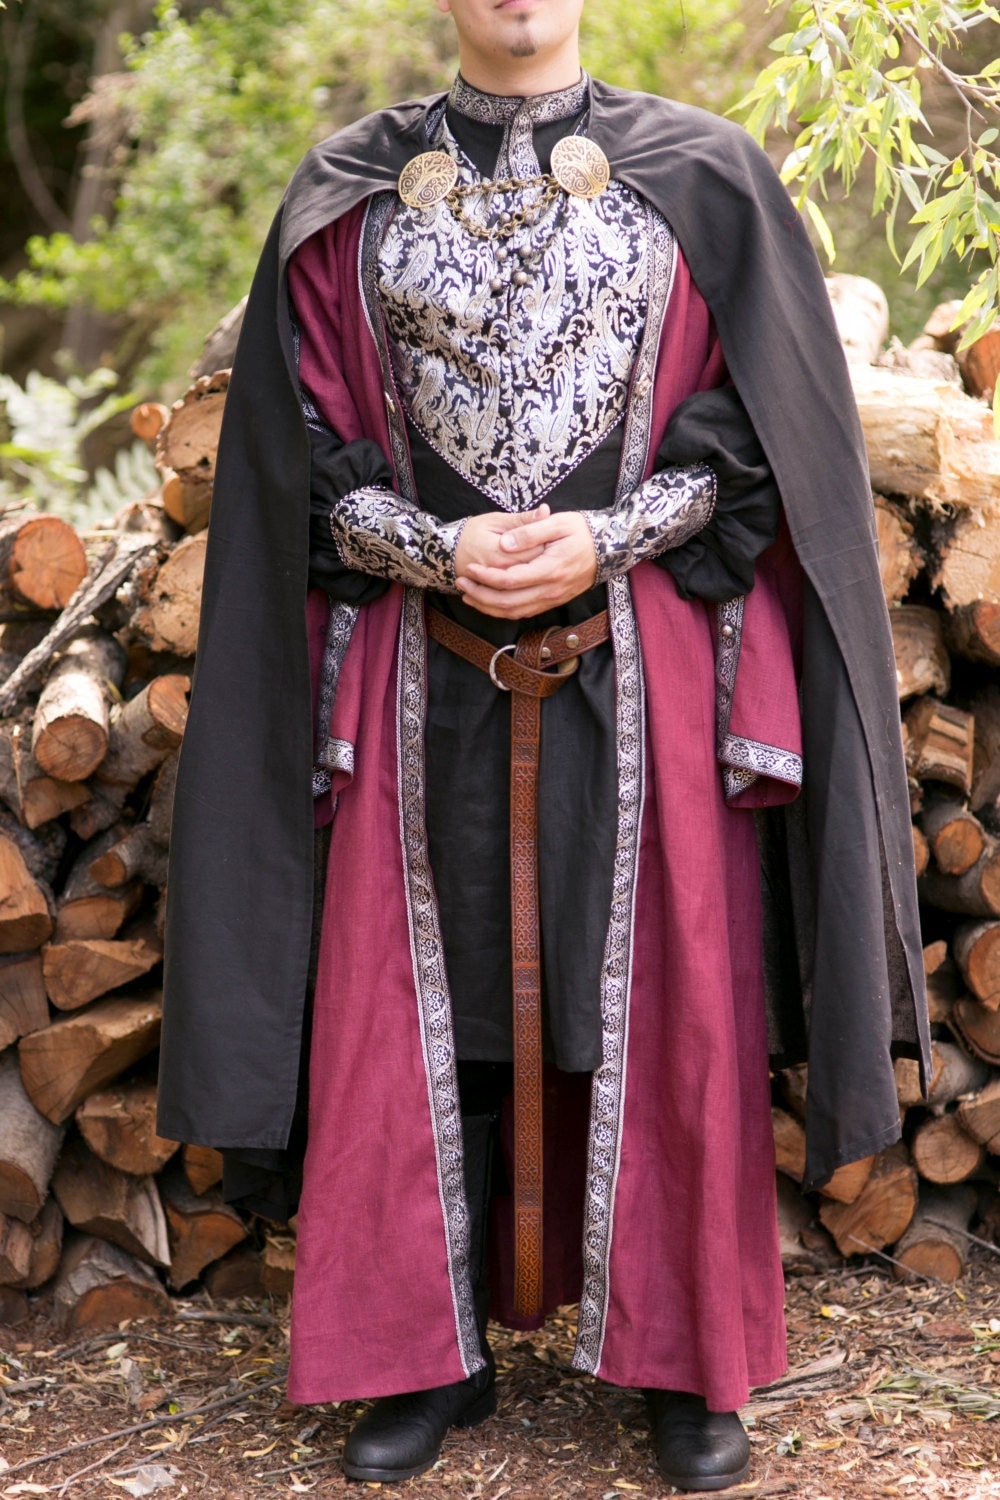 Мужские костюмы средневековья